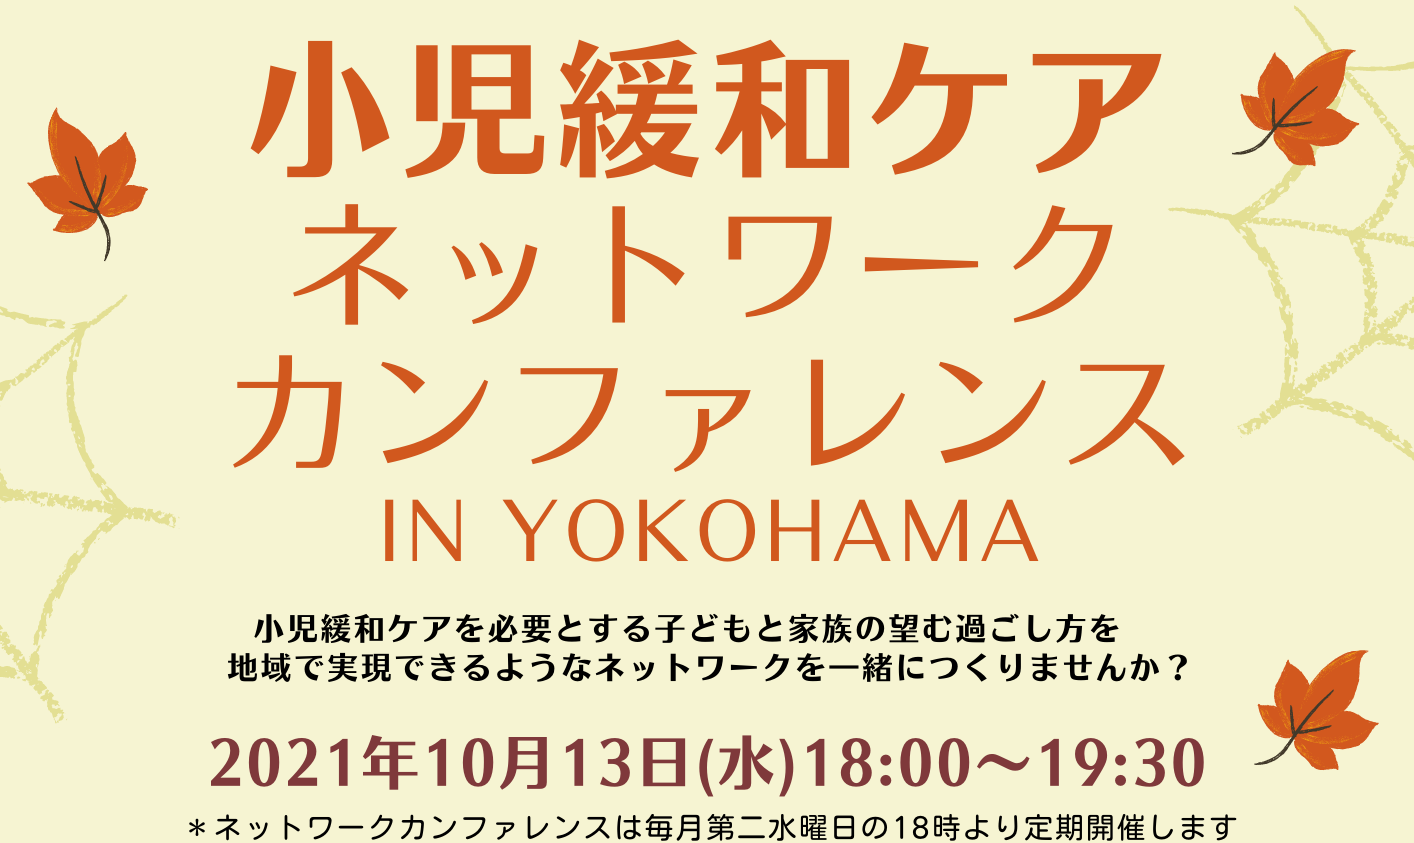 「小児緩和ケアネットワークカンファレンス in YOKOHAMA」にご登録しませんか？